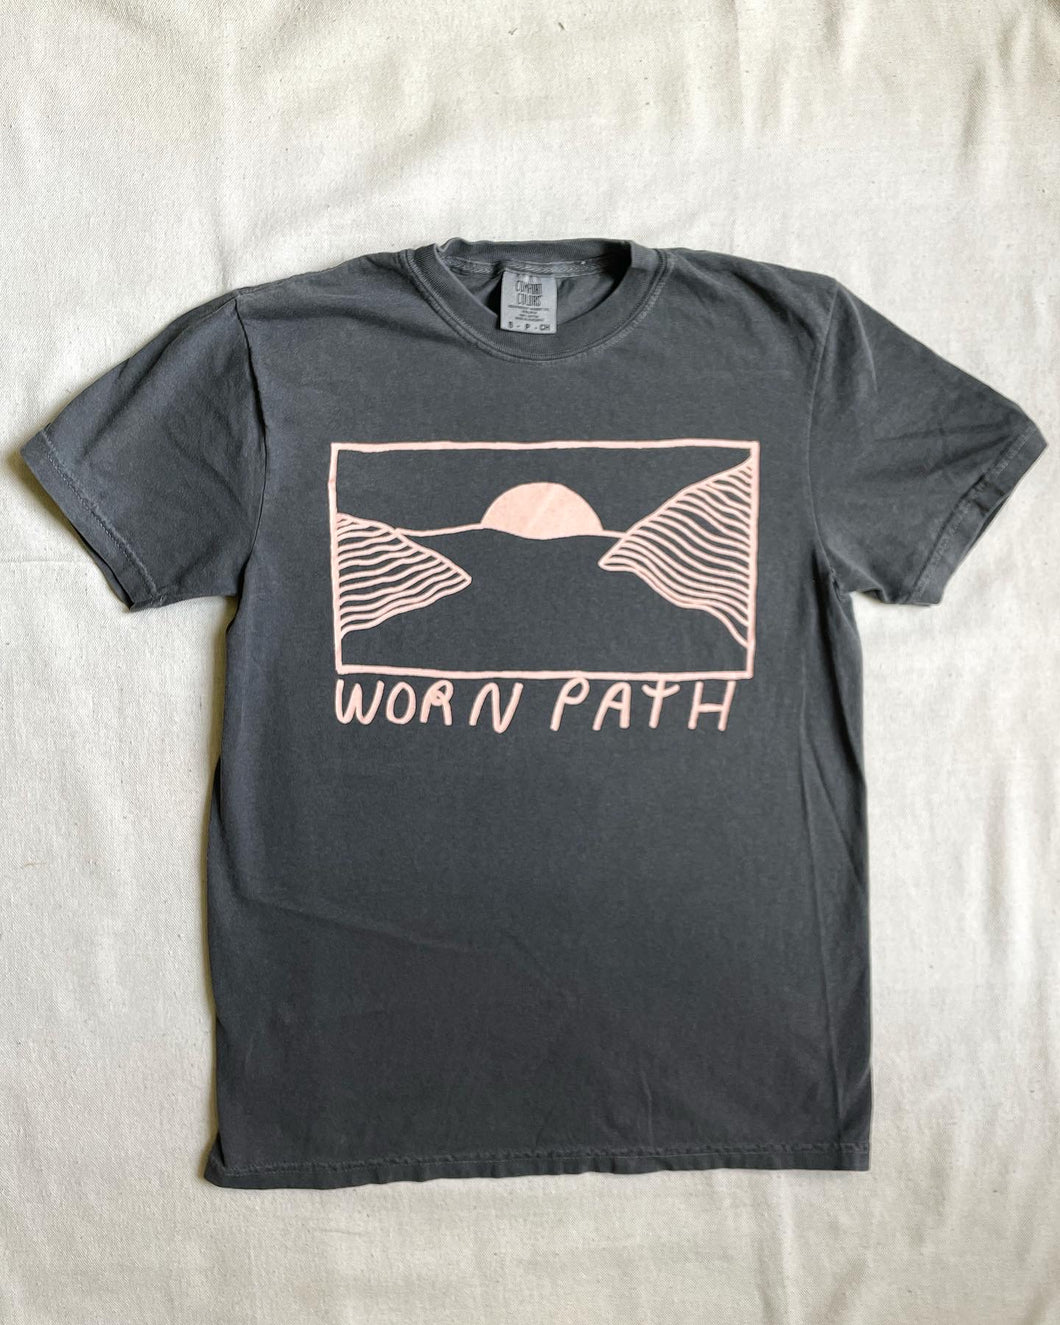 Worn Path Terrain Tee Shirt- 2 colors